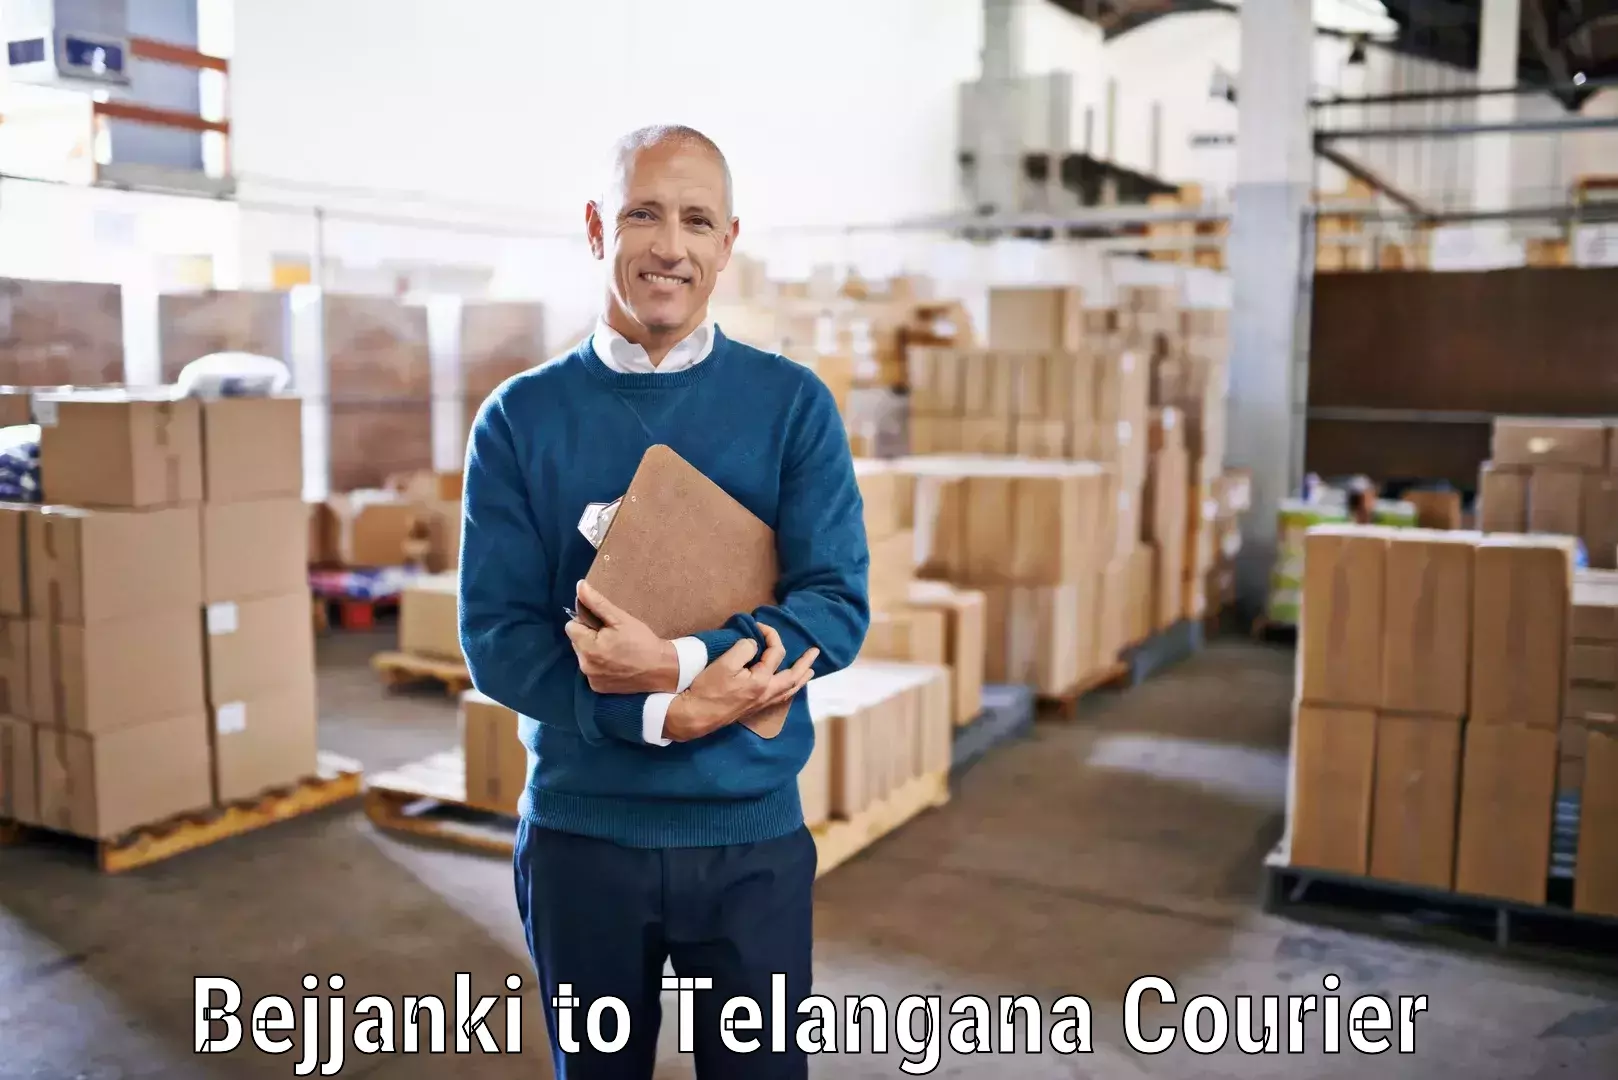 Smart parcel solutions Bejjanki to Eligedu